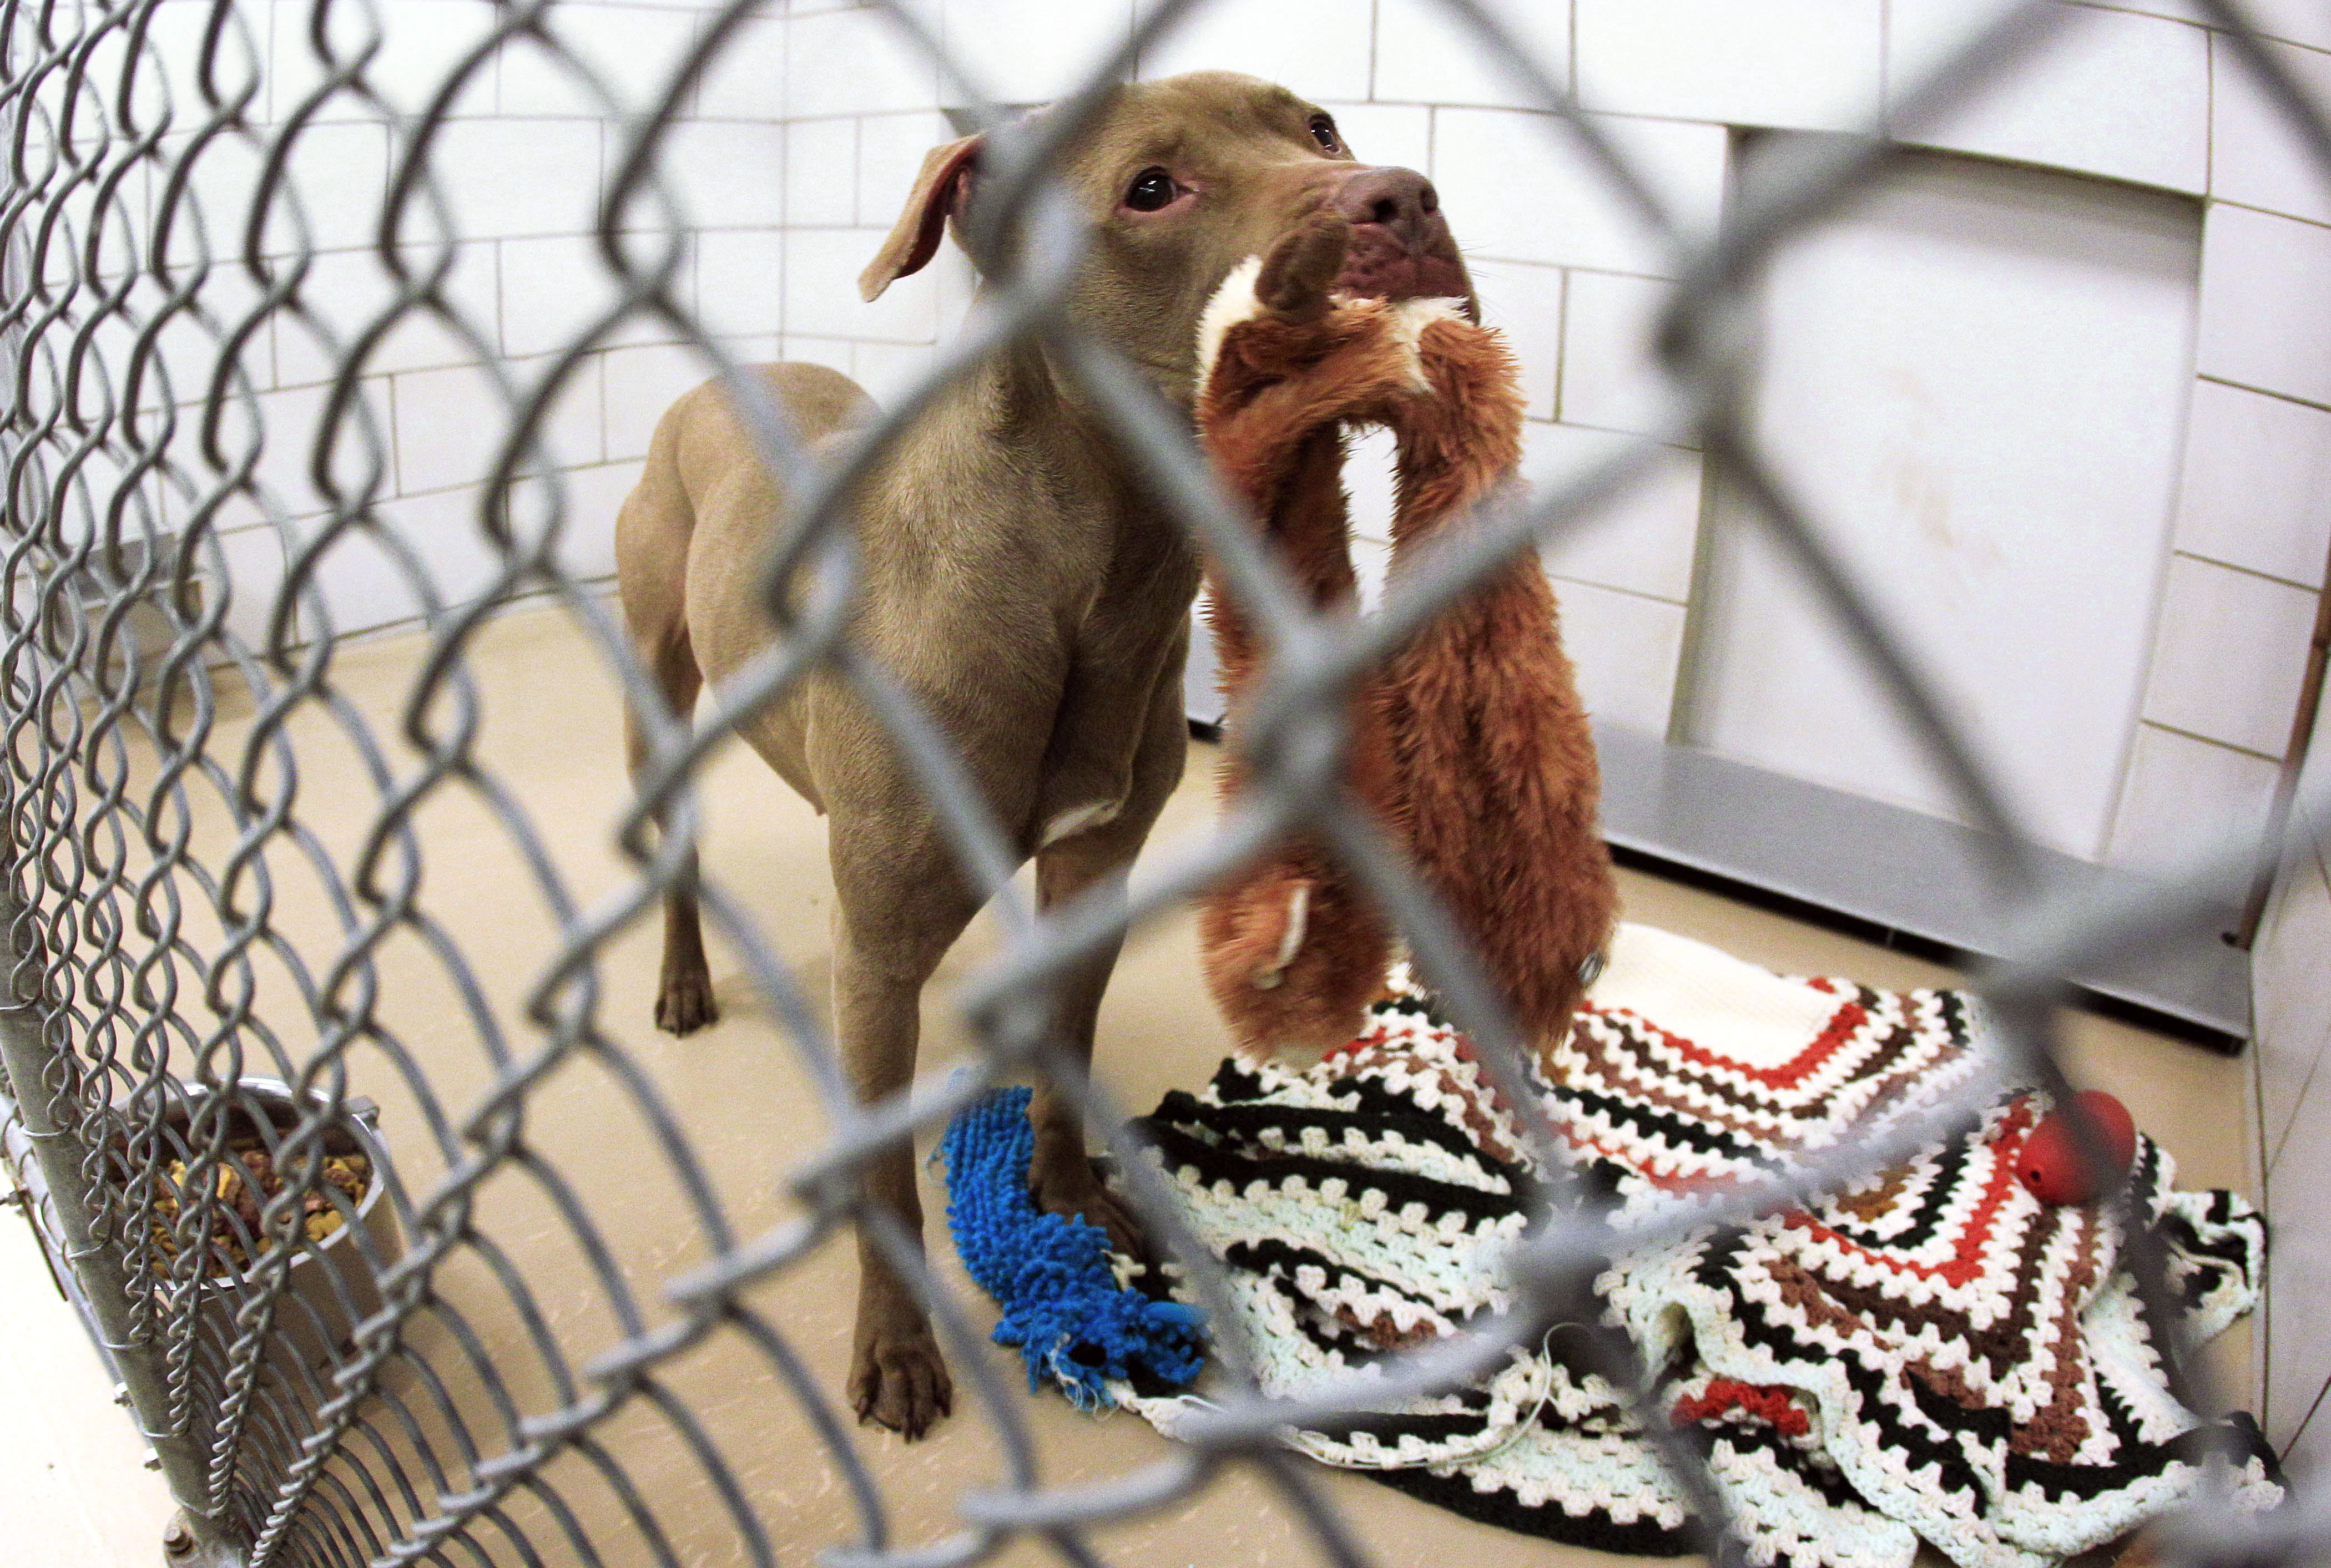 Judge gives Tenn. dog on death row a reprieve - CBS News